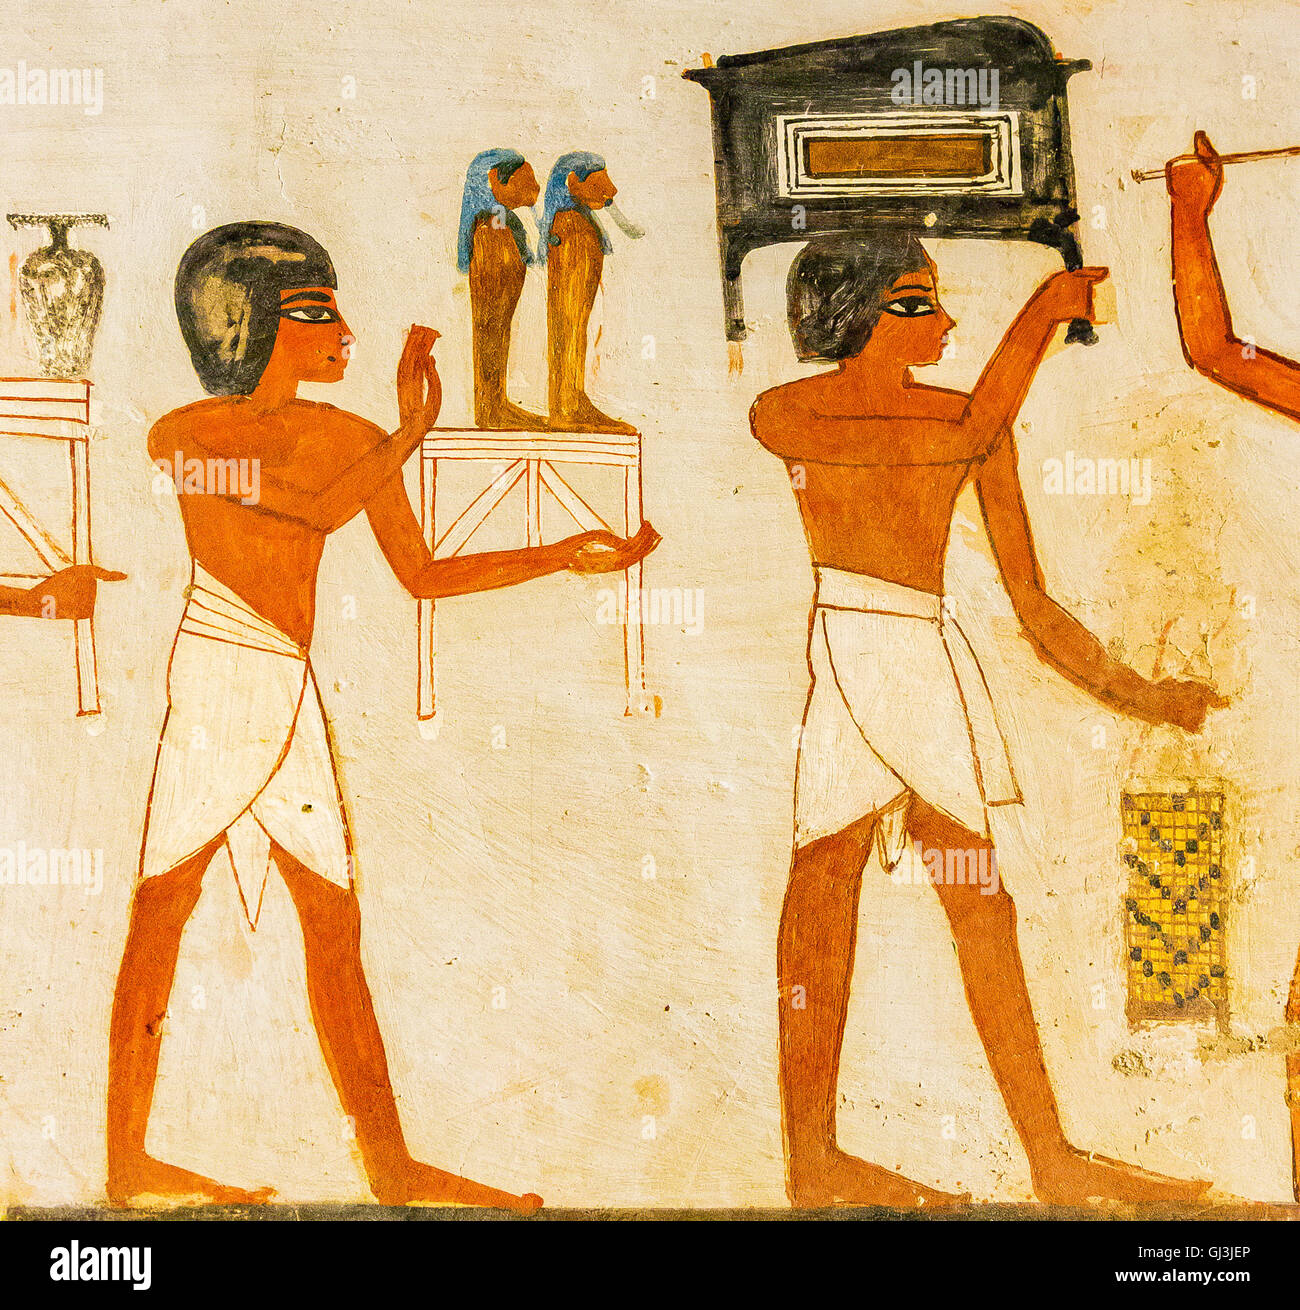 De Tebas en Egipto, El Valle de los Nobles, tumba de Menna. Procesión fúnebre, hombres traer objetos a la tumba. Foto de stock